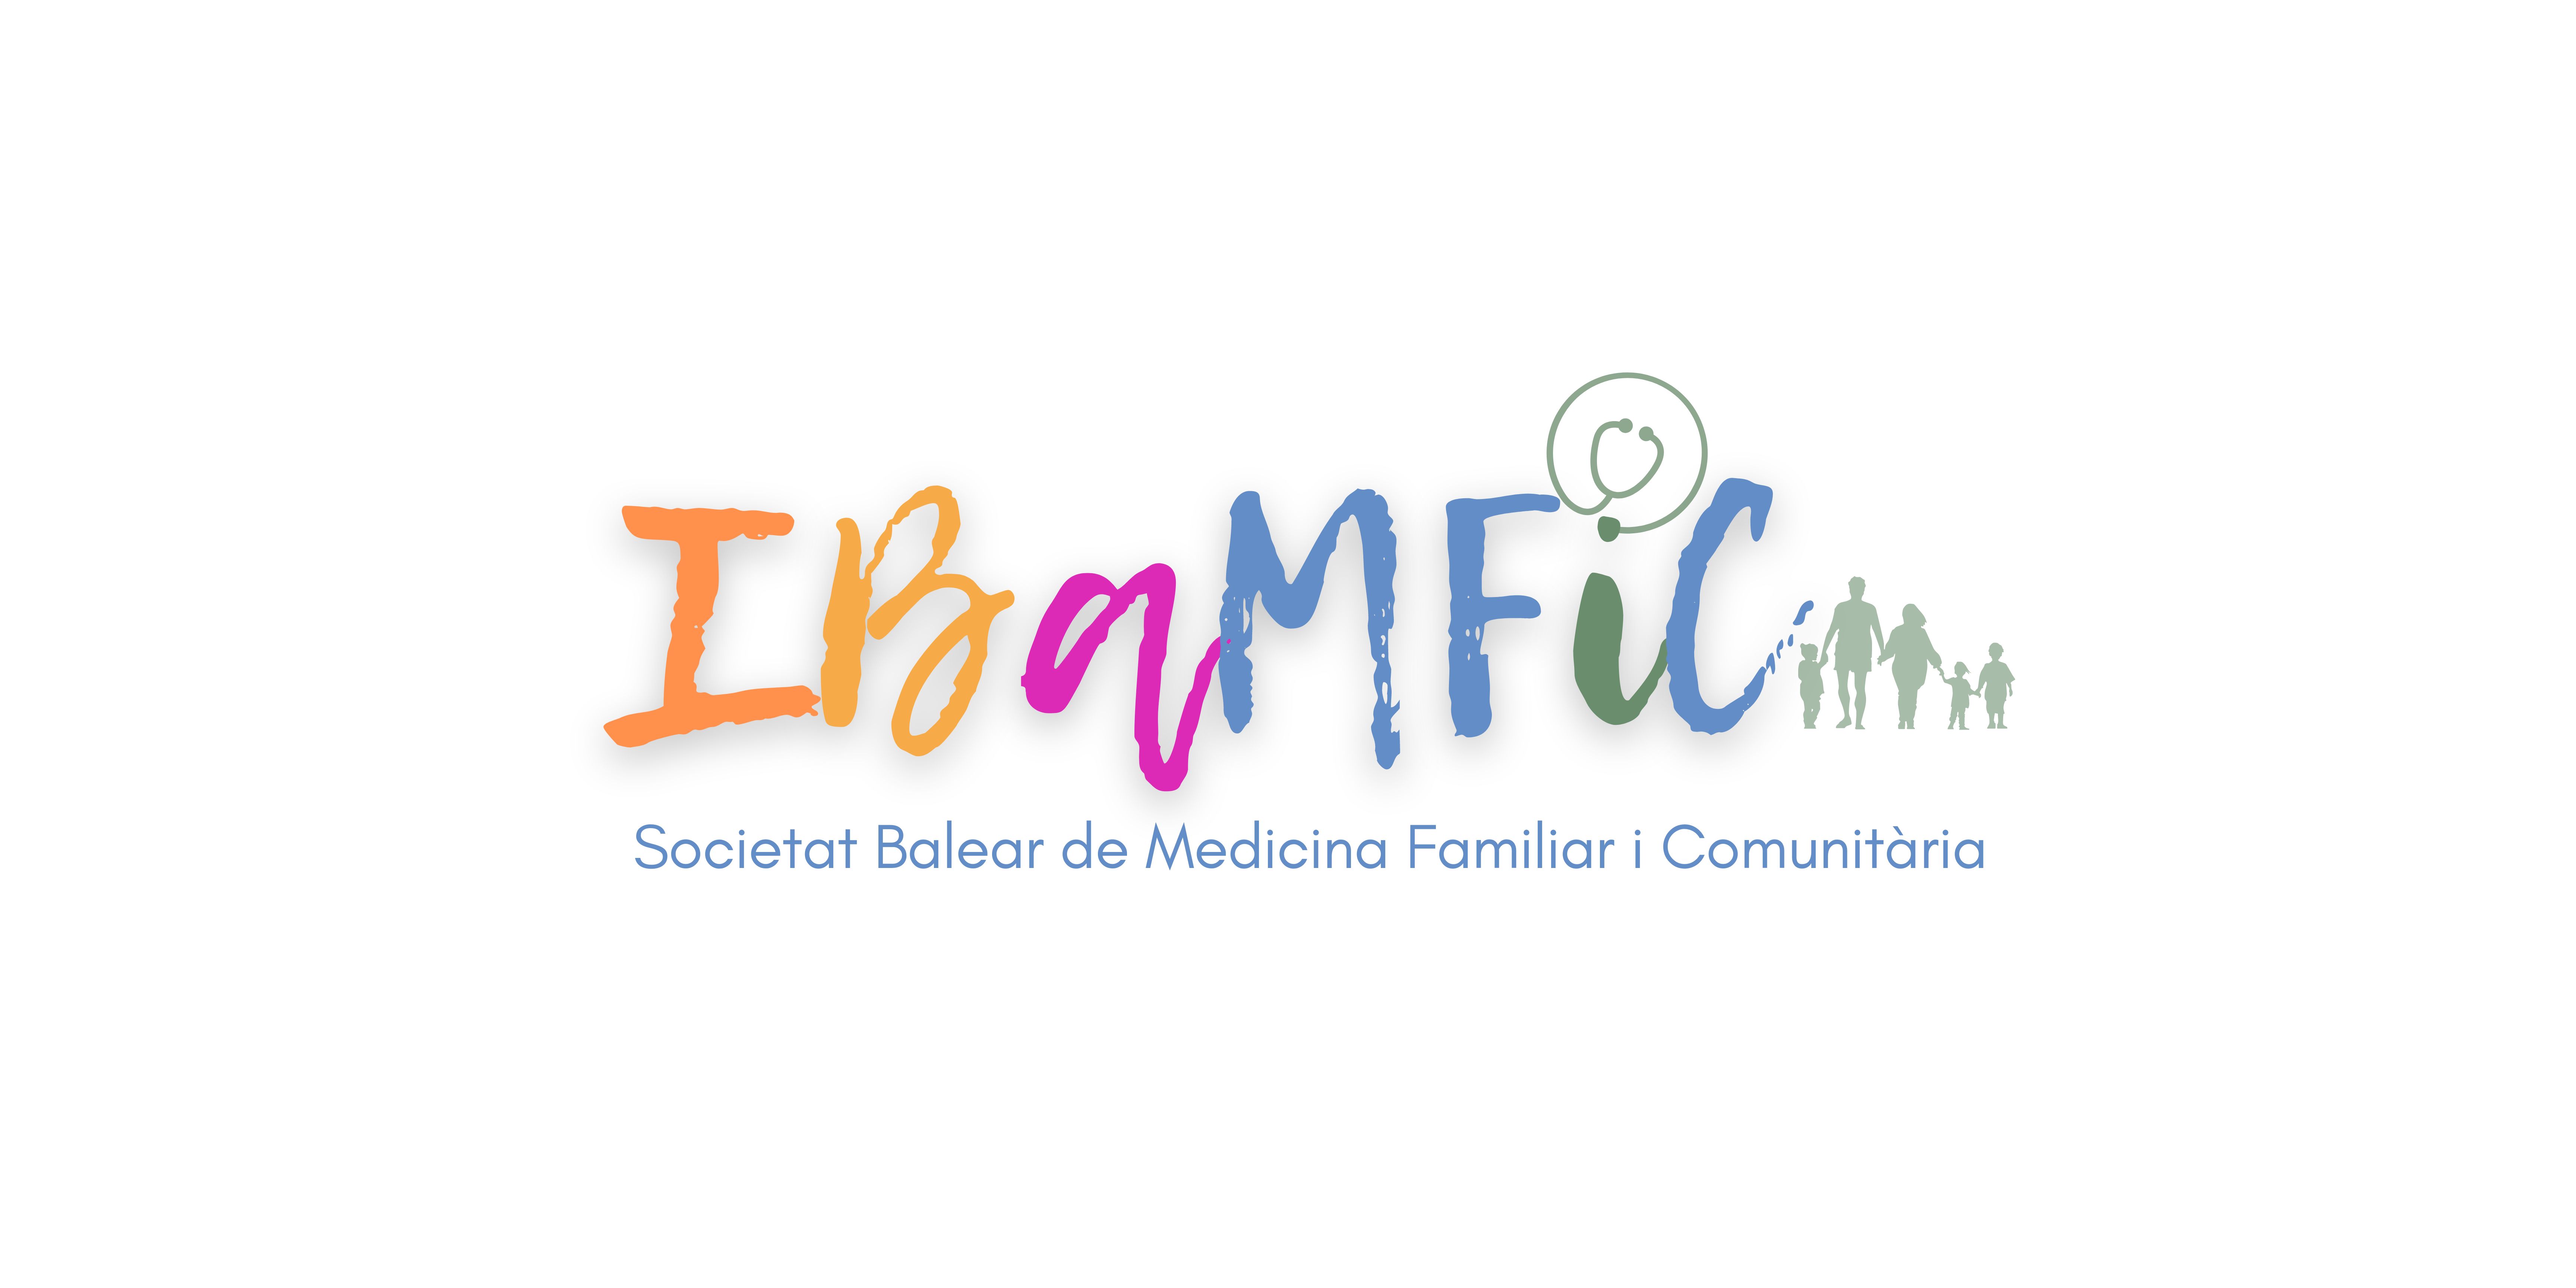 IBAMFIC – Societat Balear de Medicina Familiar i Comunitària